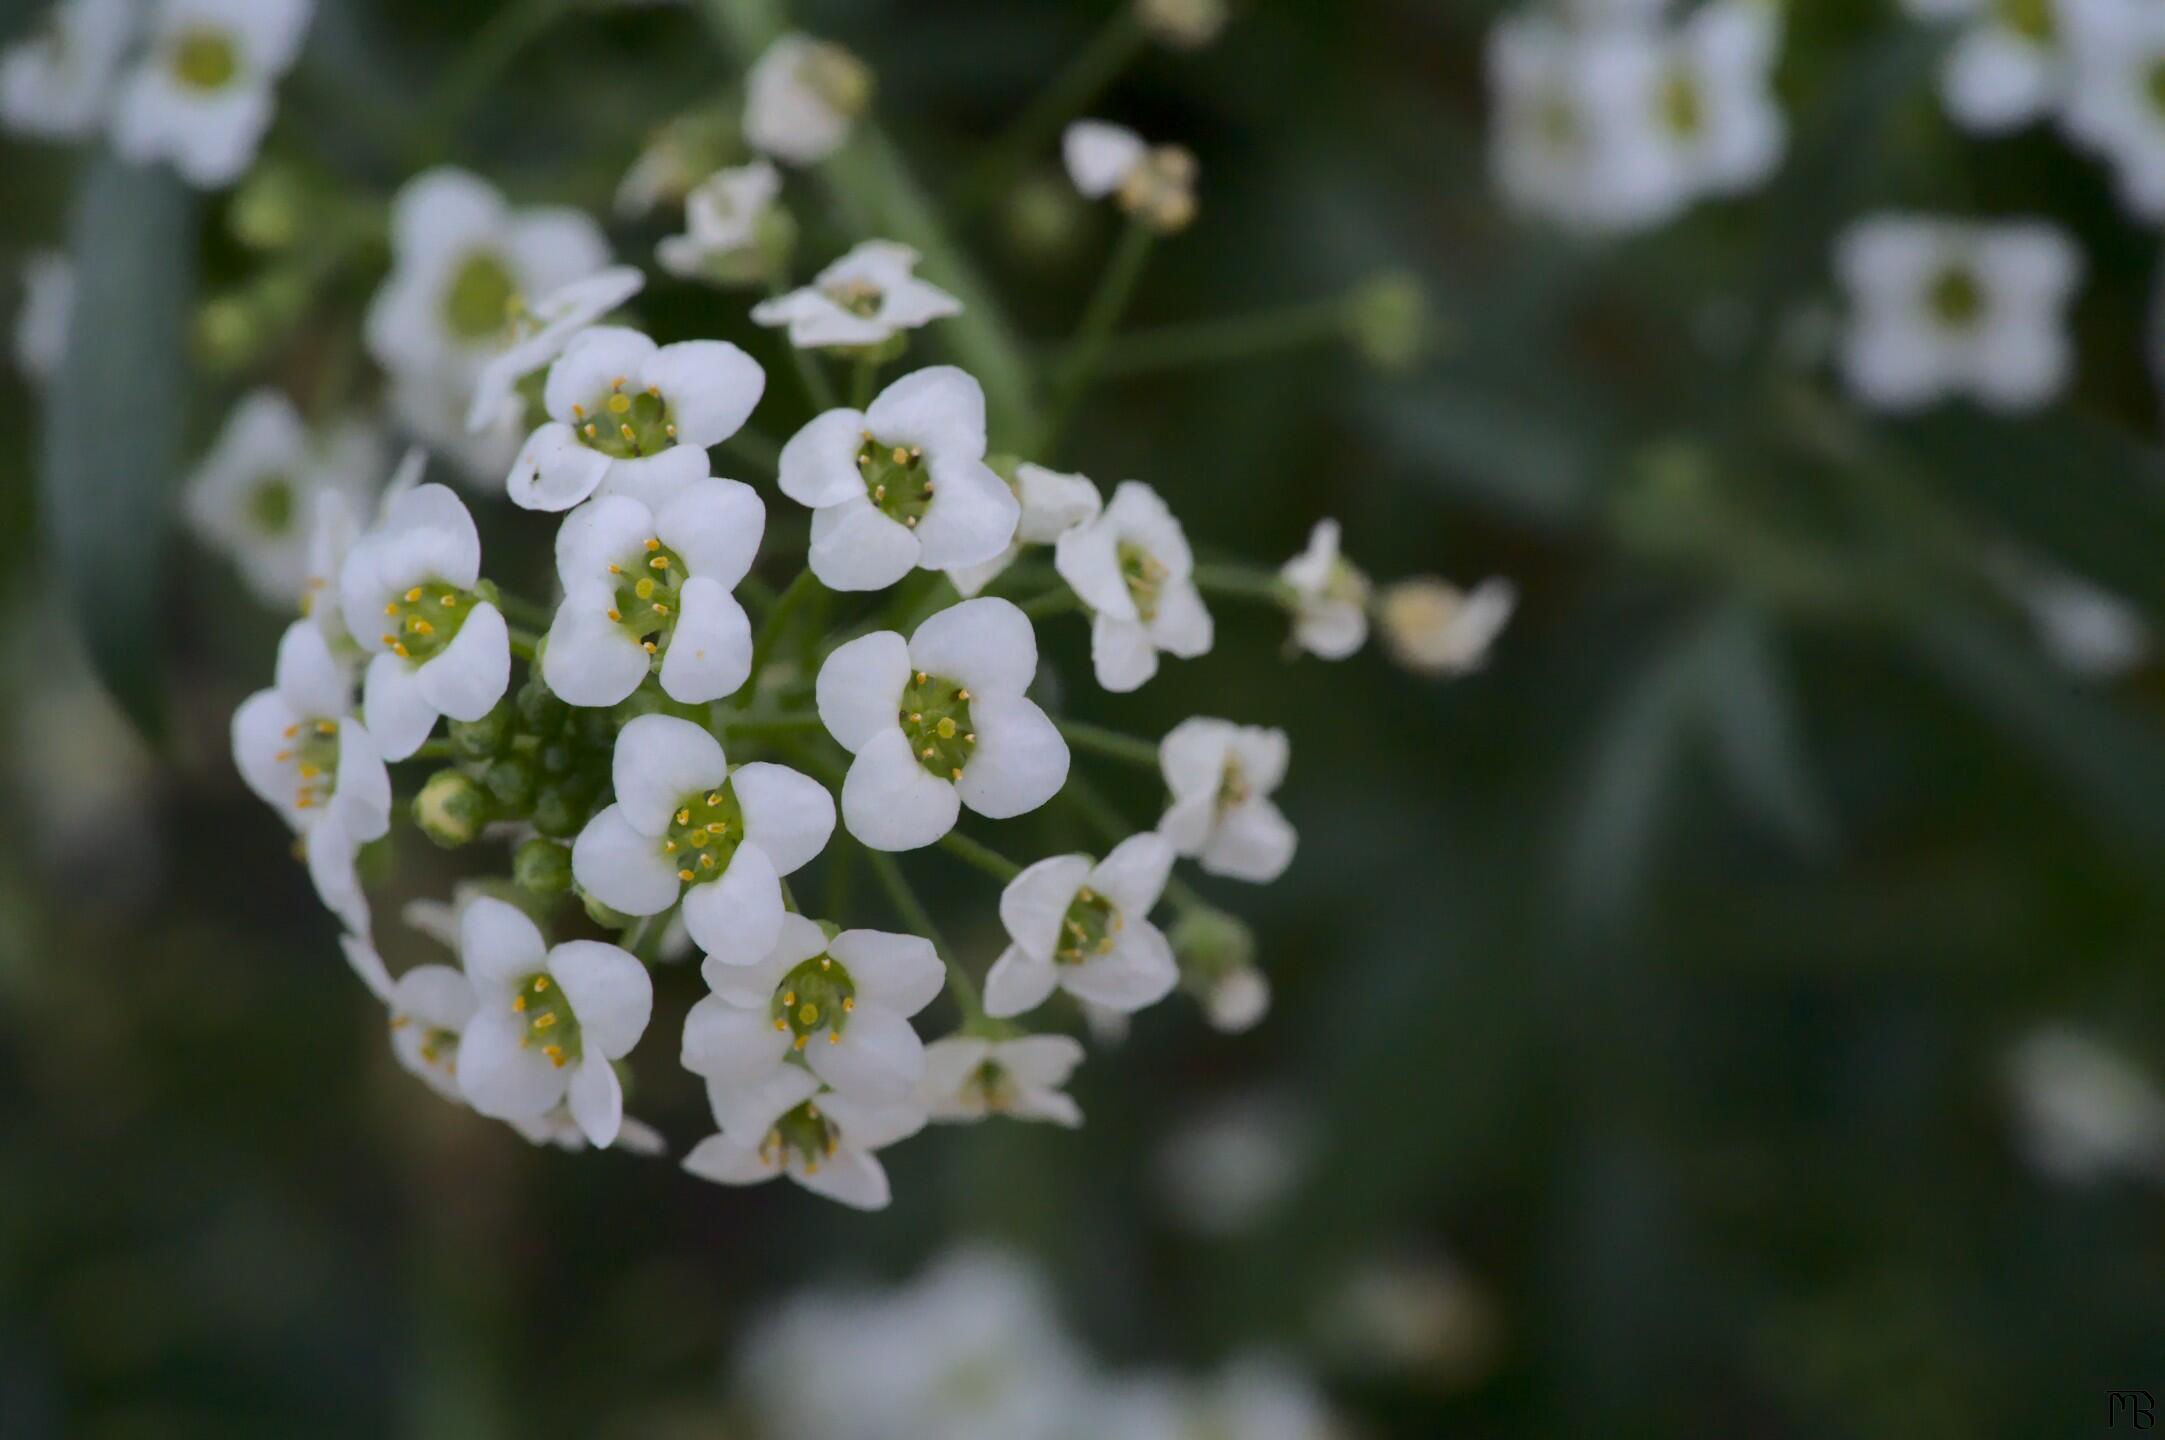 Ball of white flowers in bush